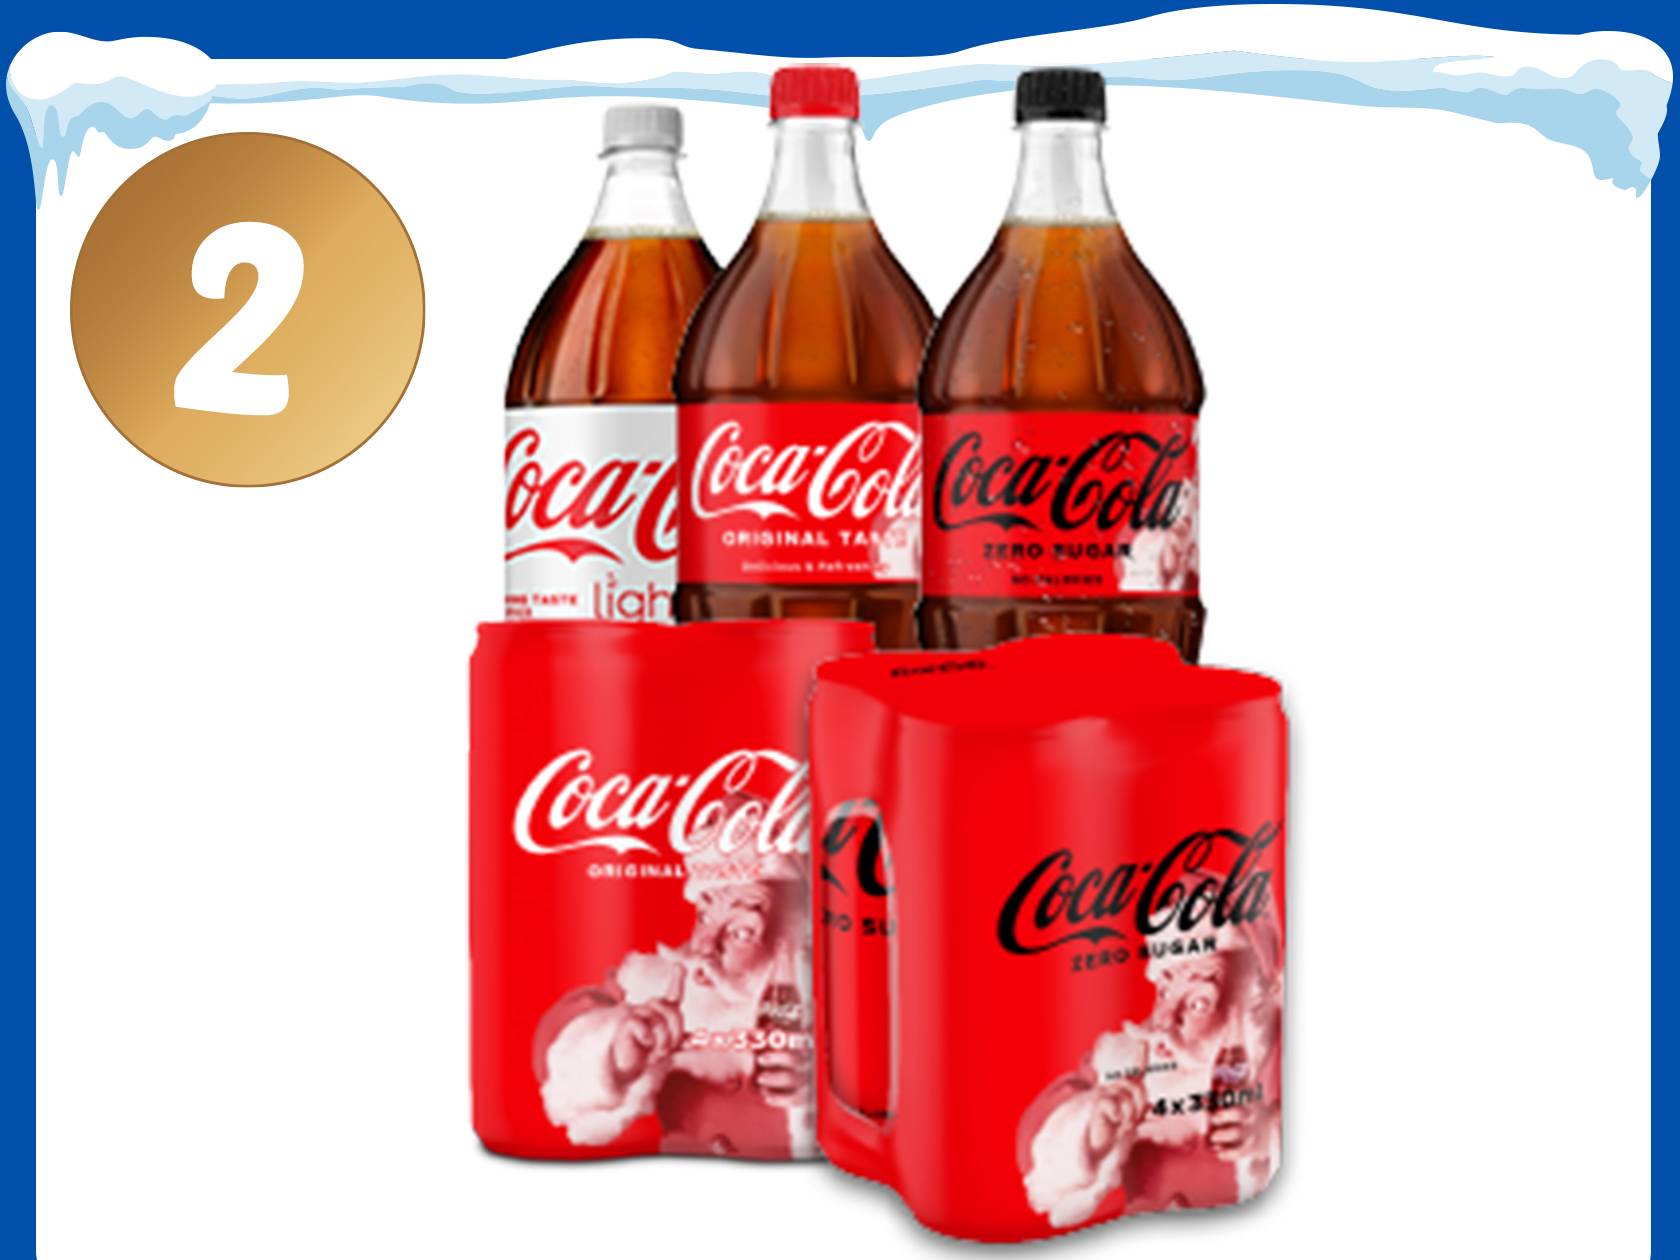 Koop 2 deelnemende Coca-Cola producten.